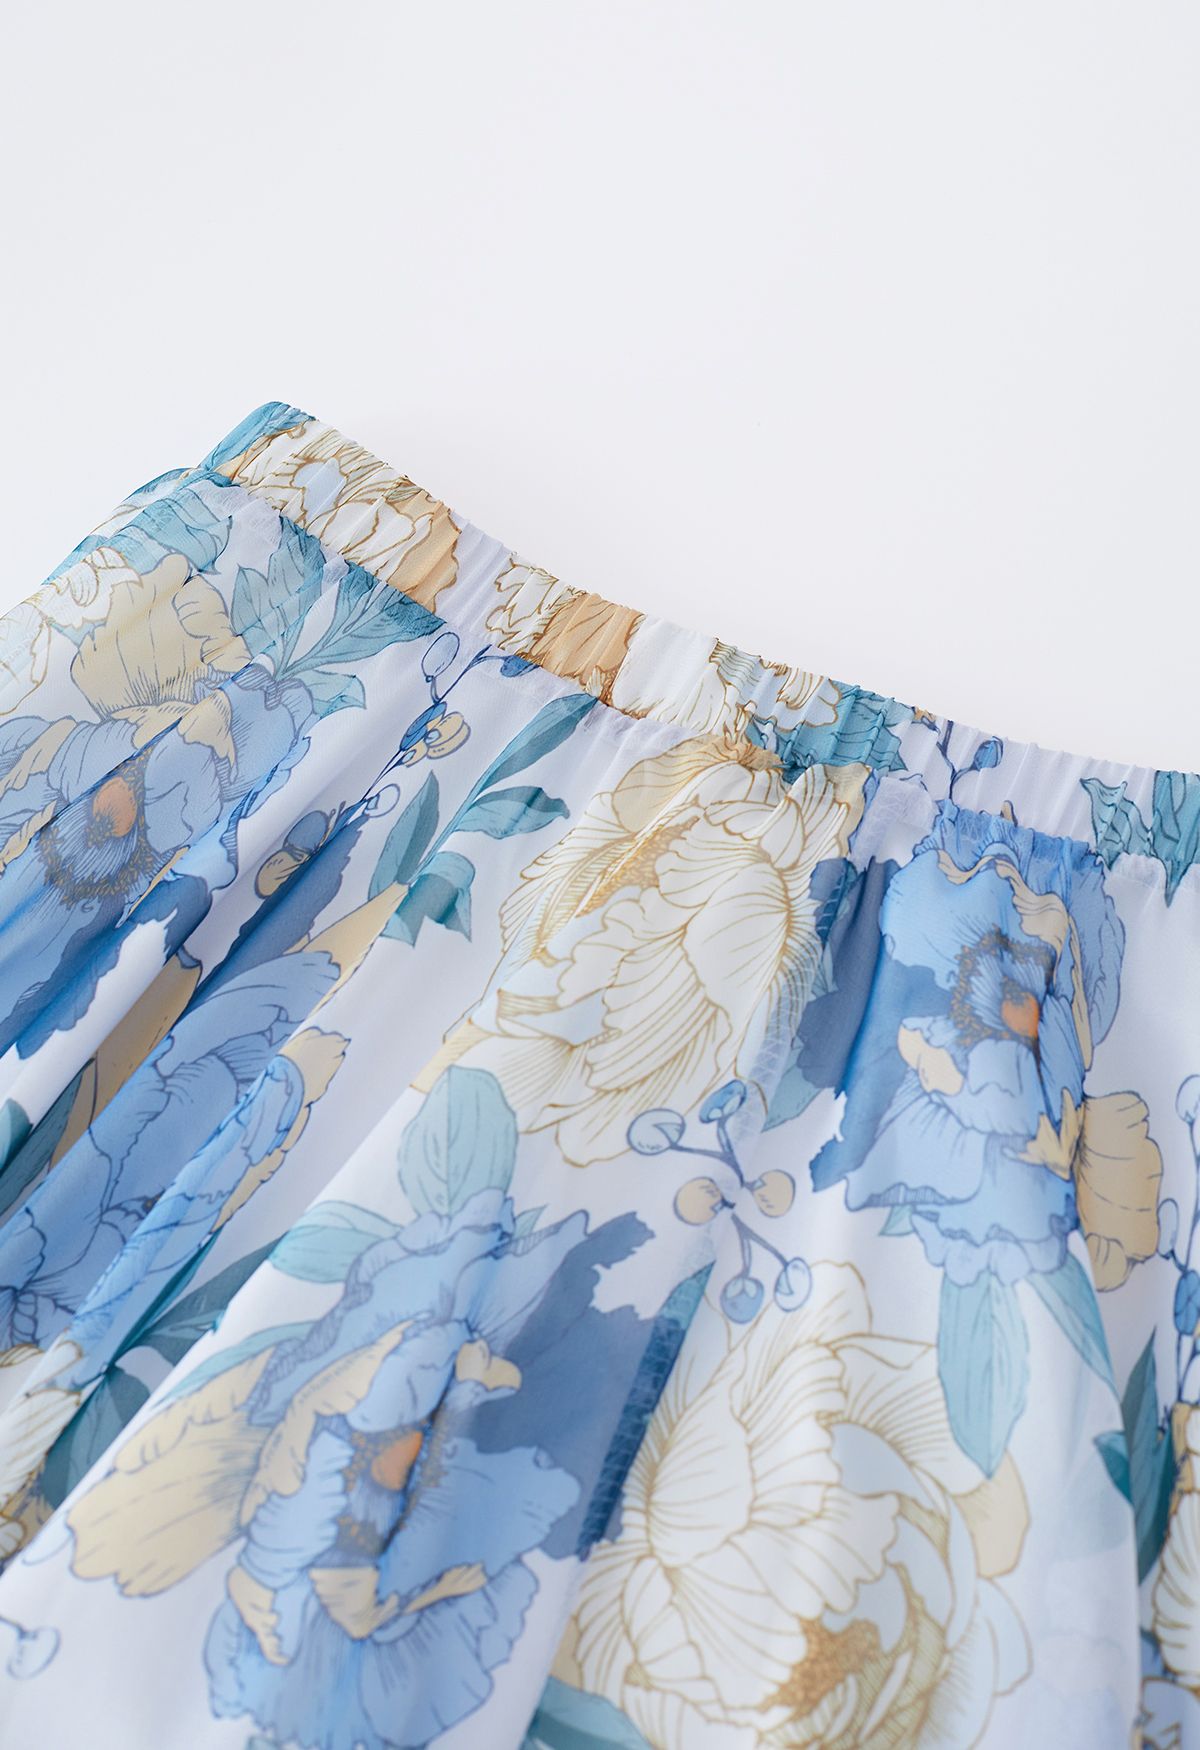 Jupe longue bleuâtre en mousseline de soie à fleurs fraîches